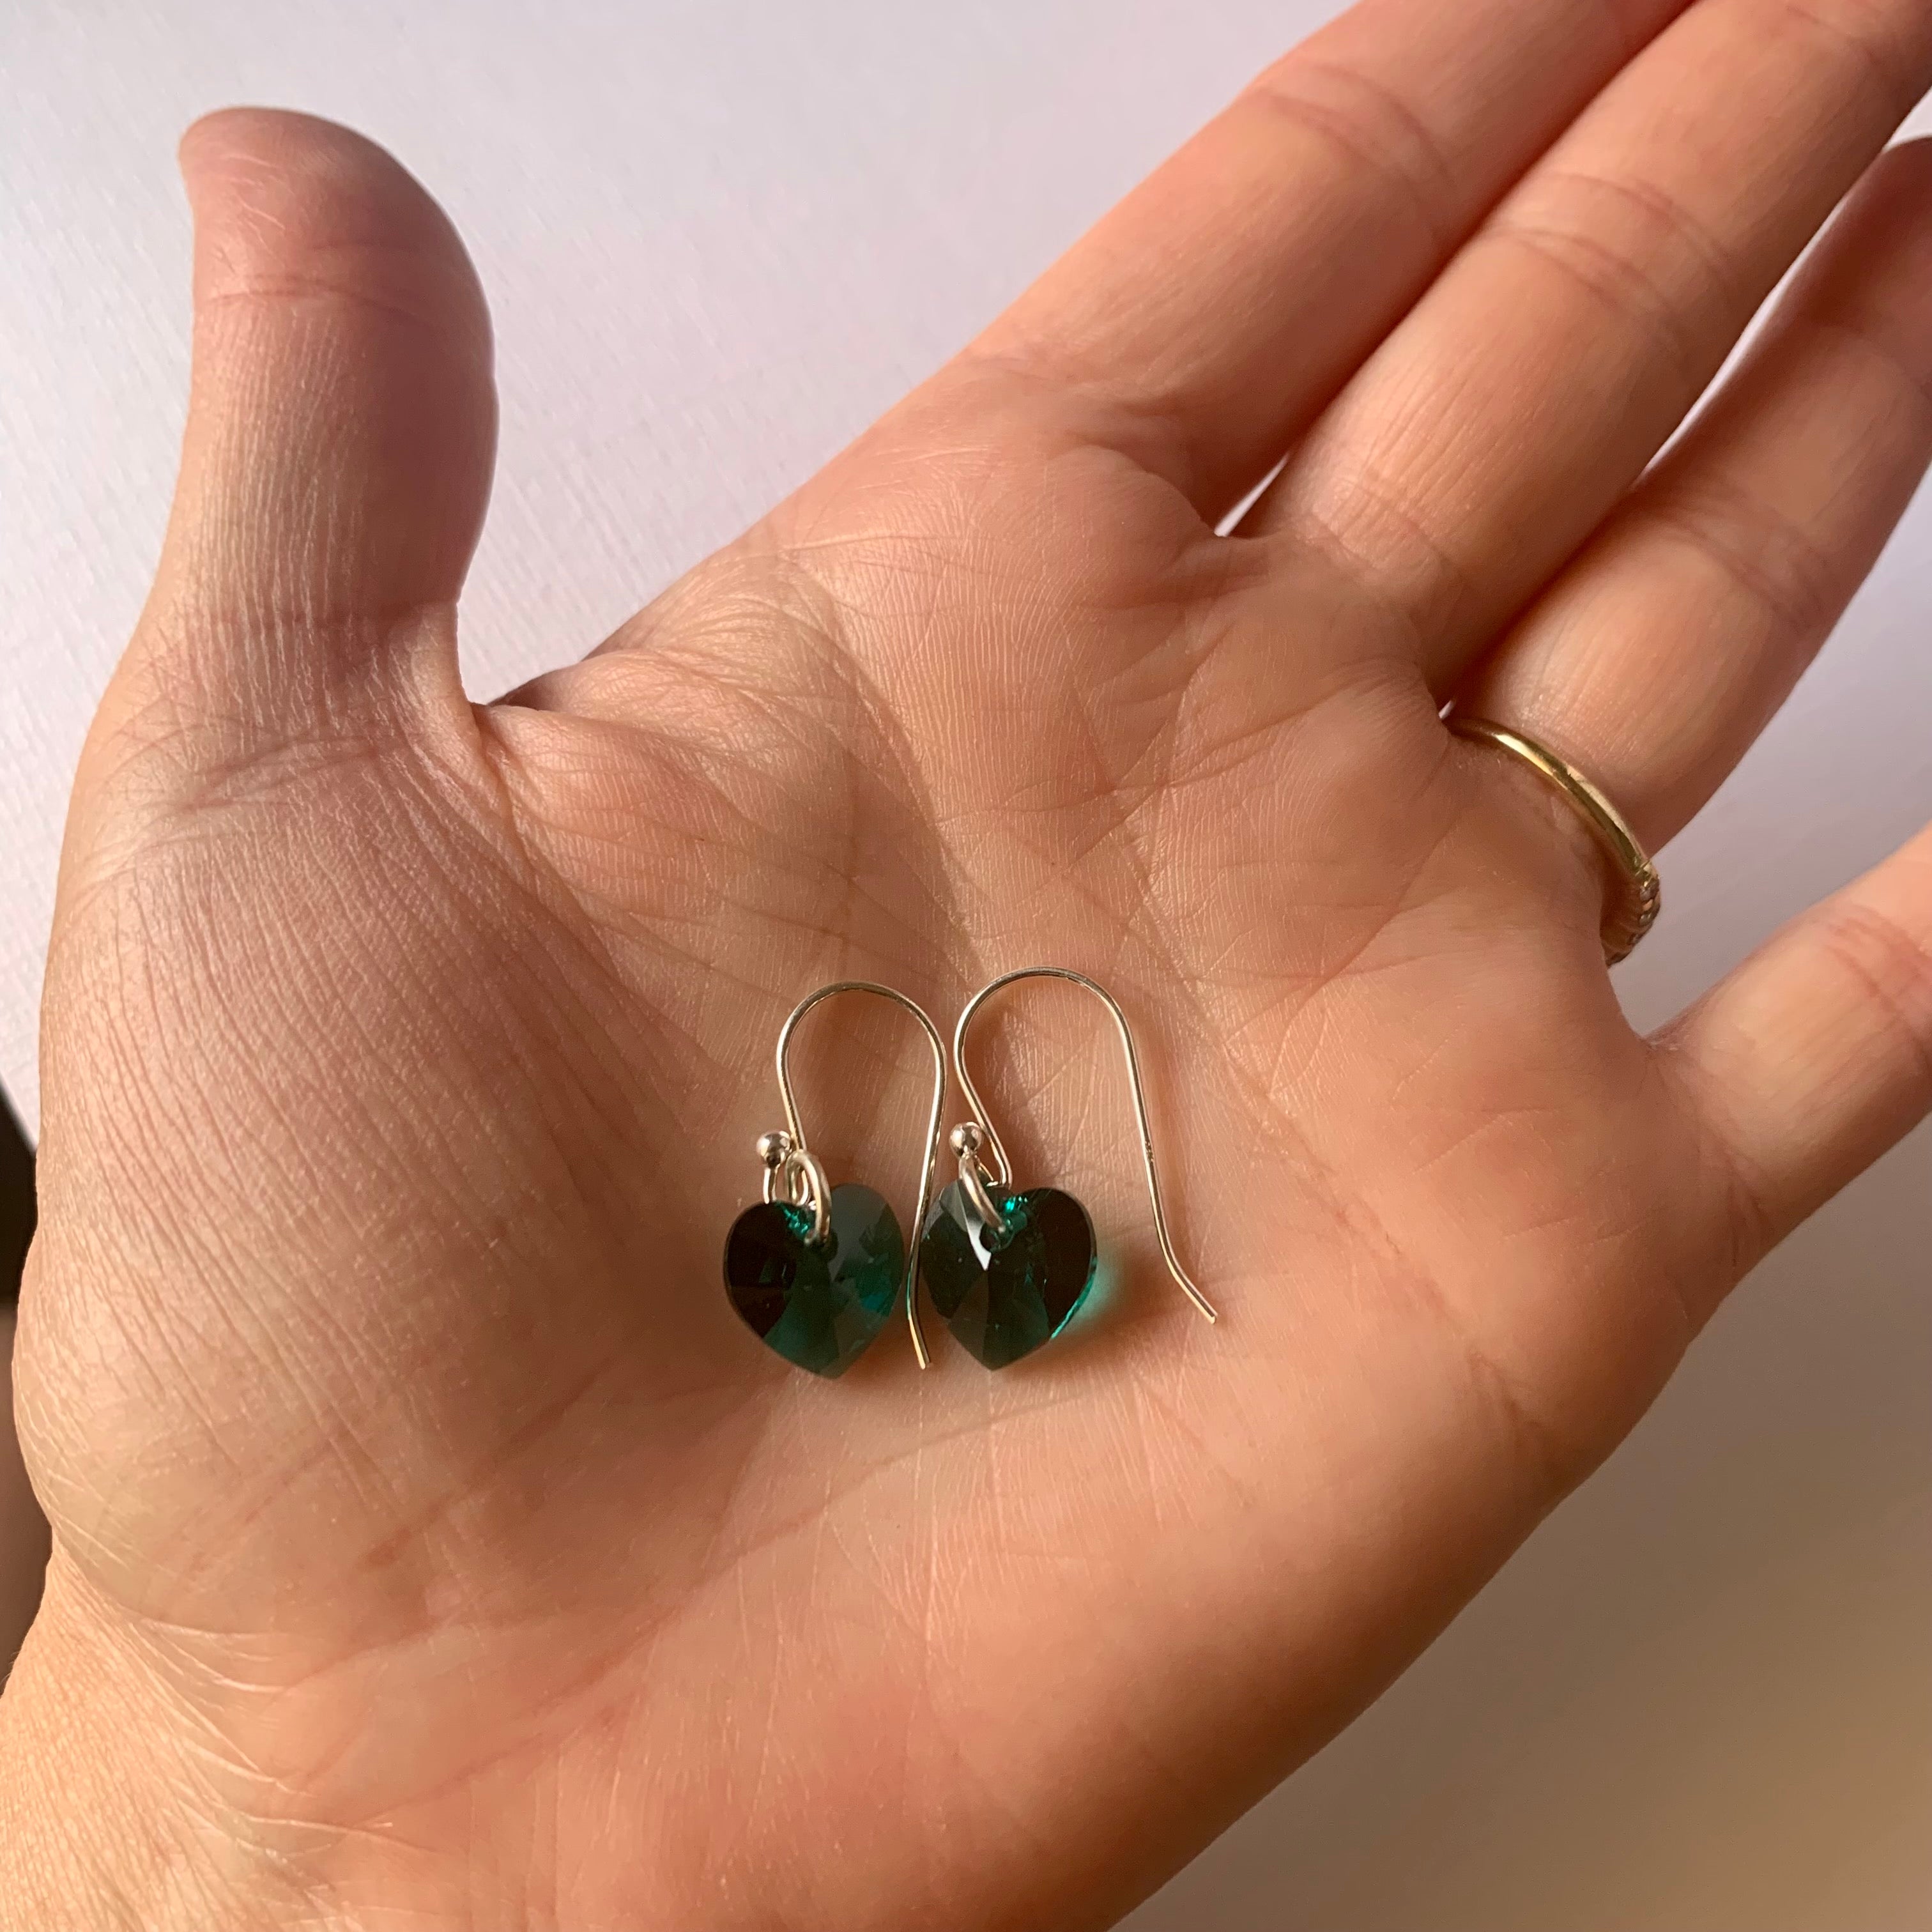 Sparkle heart earrings - Swarovski crystal hearts in emerald green